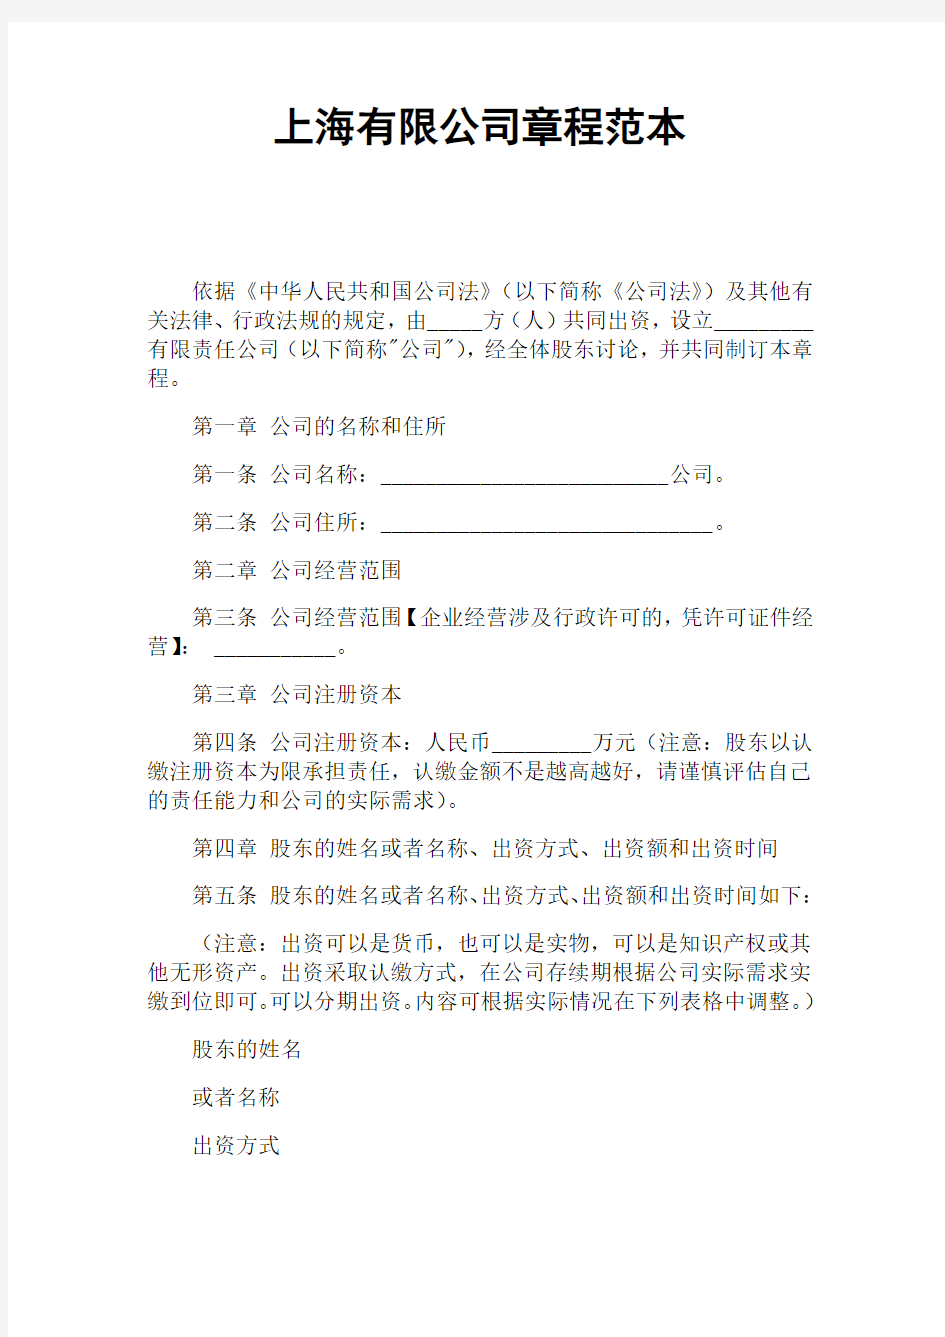 上海有限公司章程官方